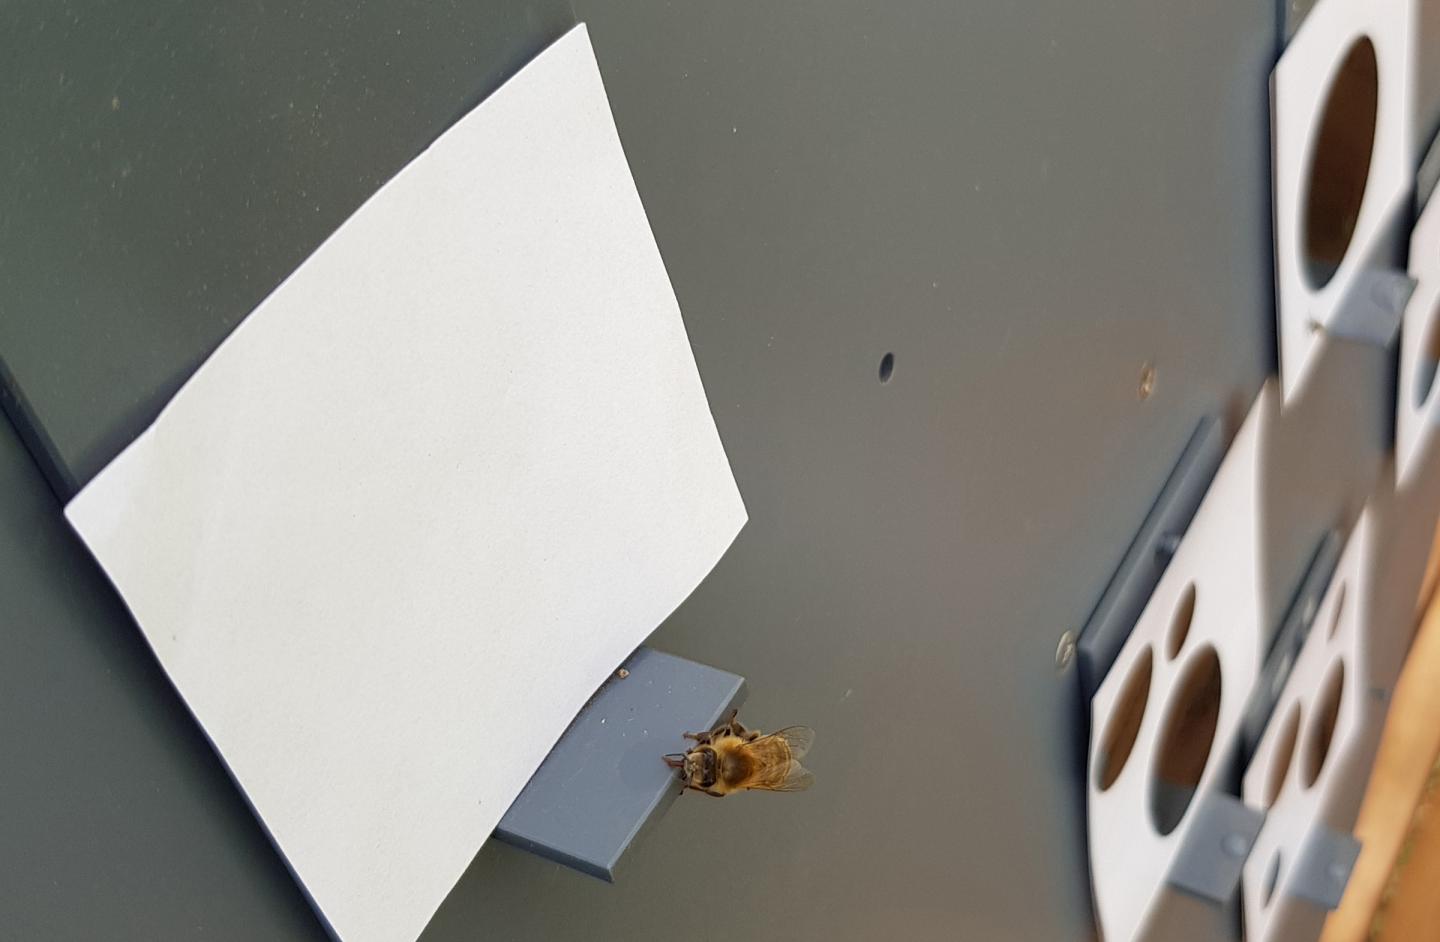 ミツバチが「ゼロ」の概念を理解できると判明。昆虫で初の画像 2/3